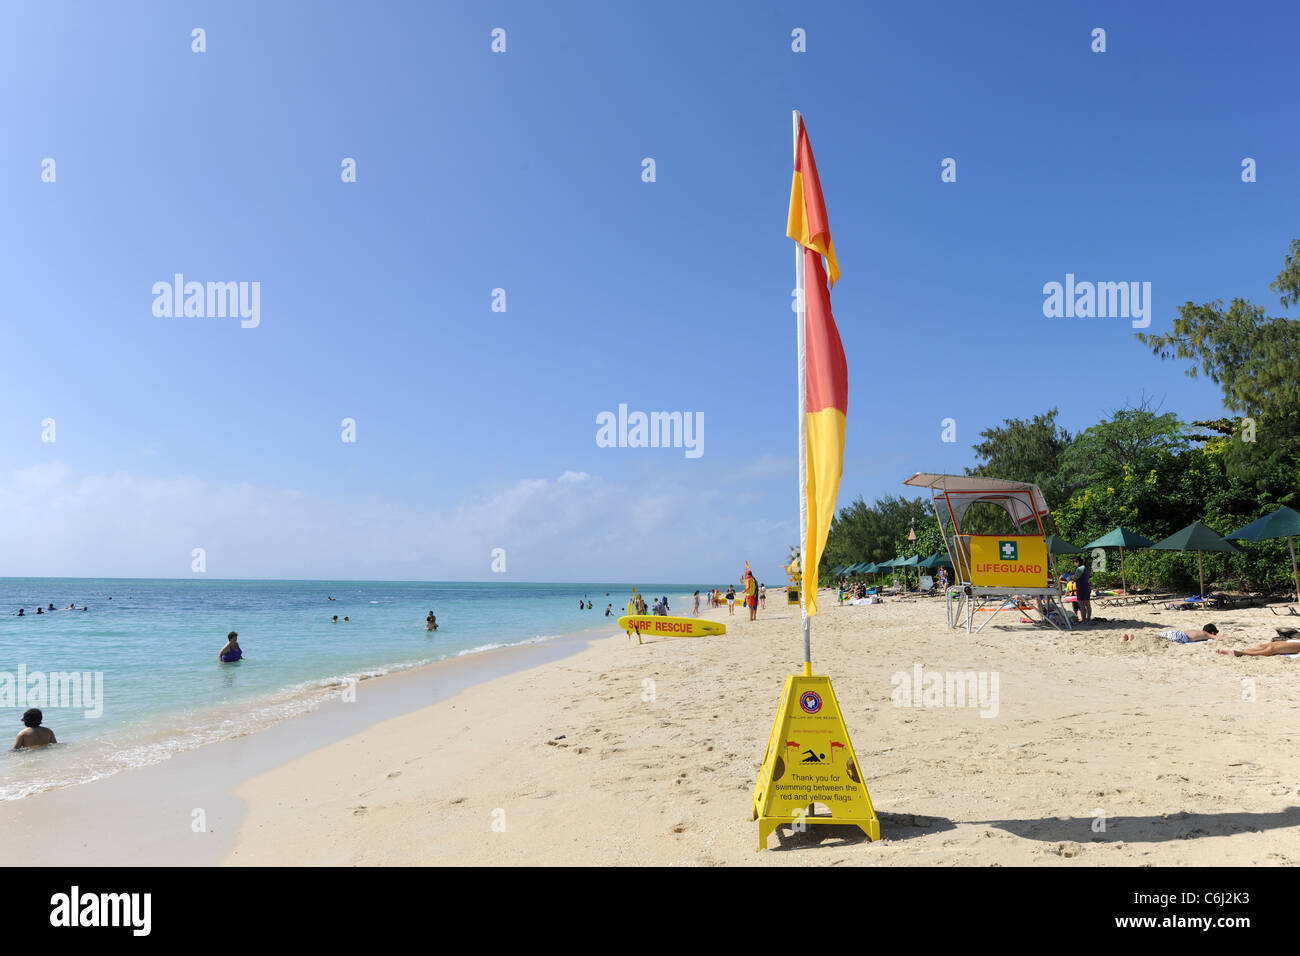 Red& bandiera gialla sulla spiaggia, Isola Verde, della Grande Barriera Corallina, Queensland, Australia Foto Stock